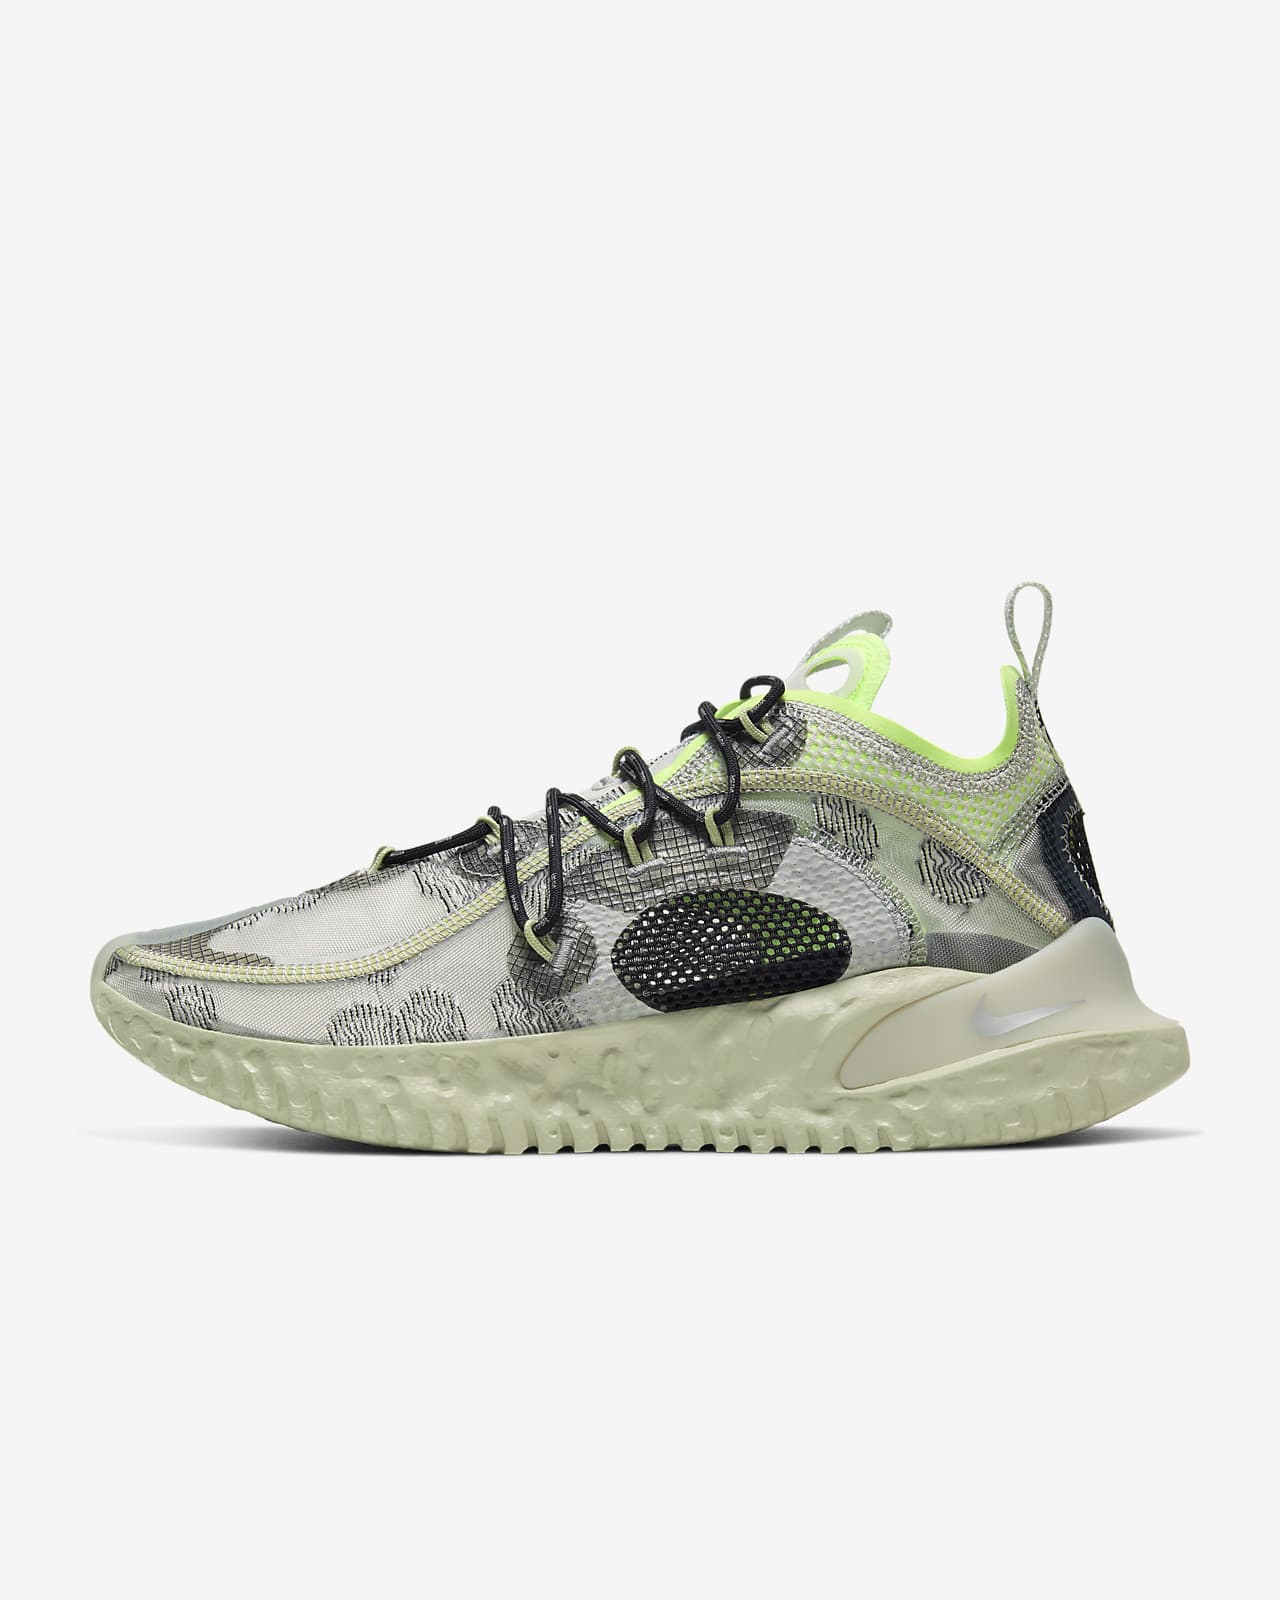 2020 shoes